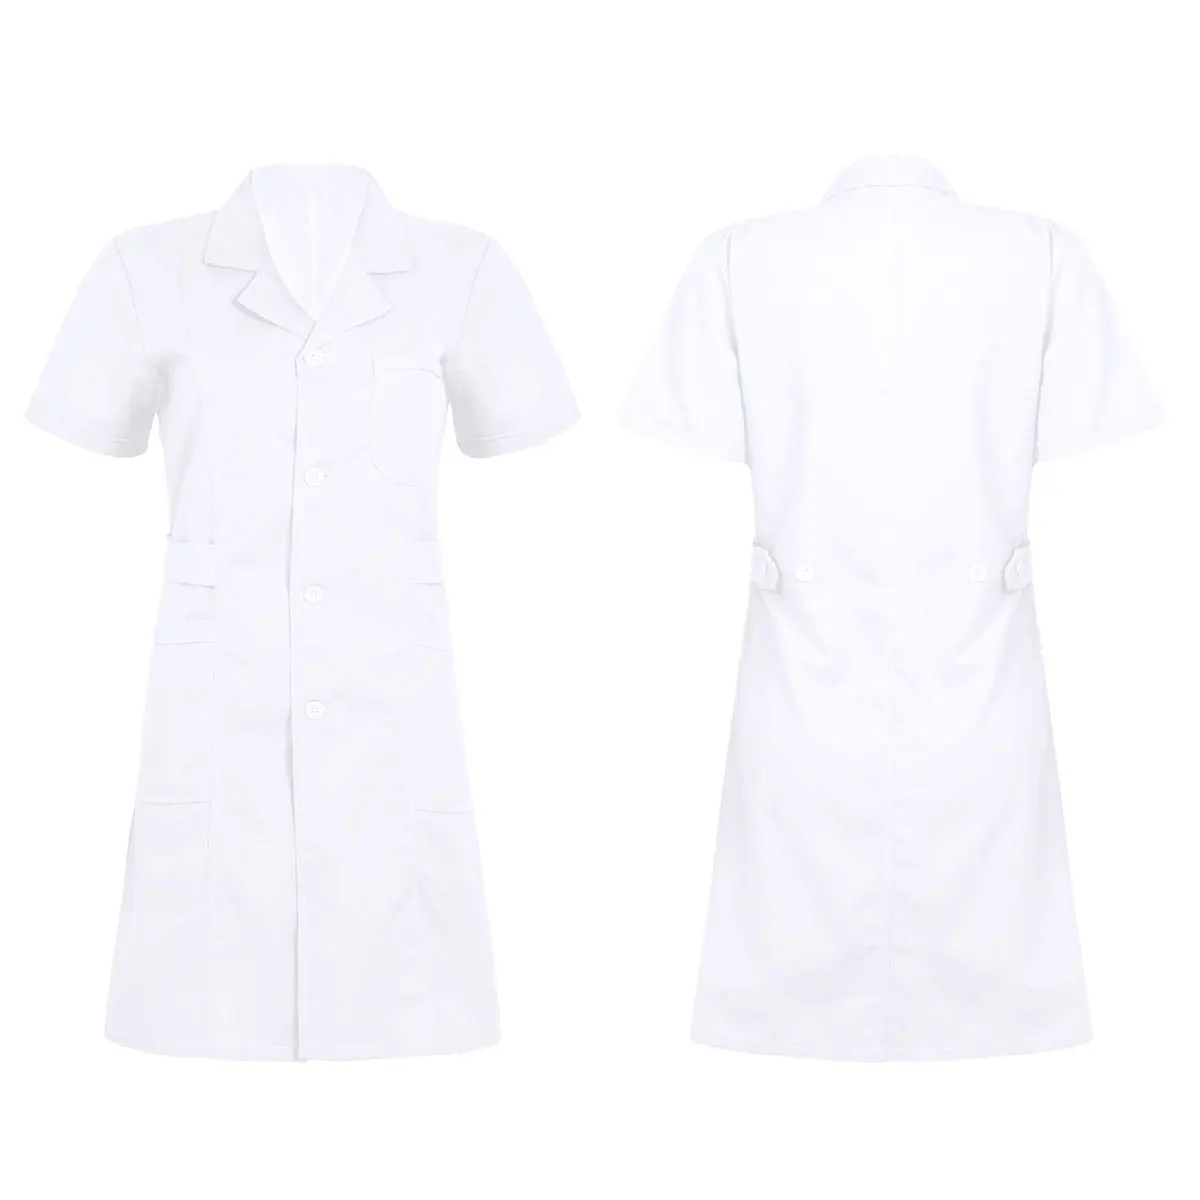 Iiniim для женщин и взрослых Униформа воротник с лацканами короткий рукав кнопка спереди сплошной цвет больница Медсестры скраб лабораторное пальто униформа платье